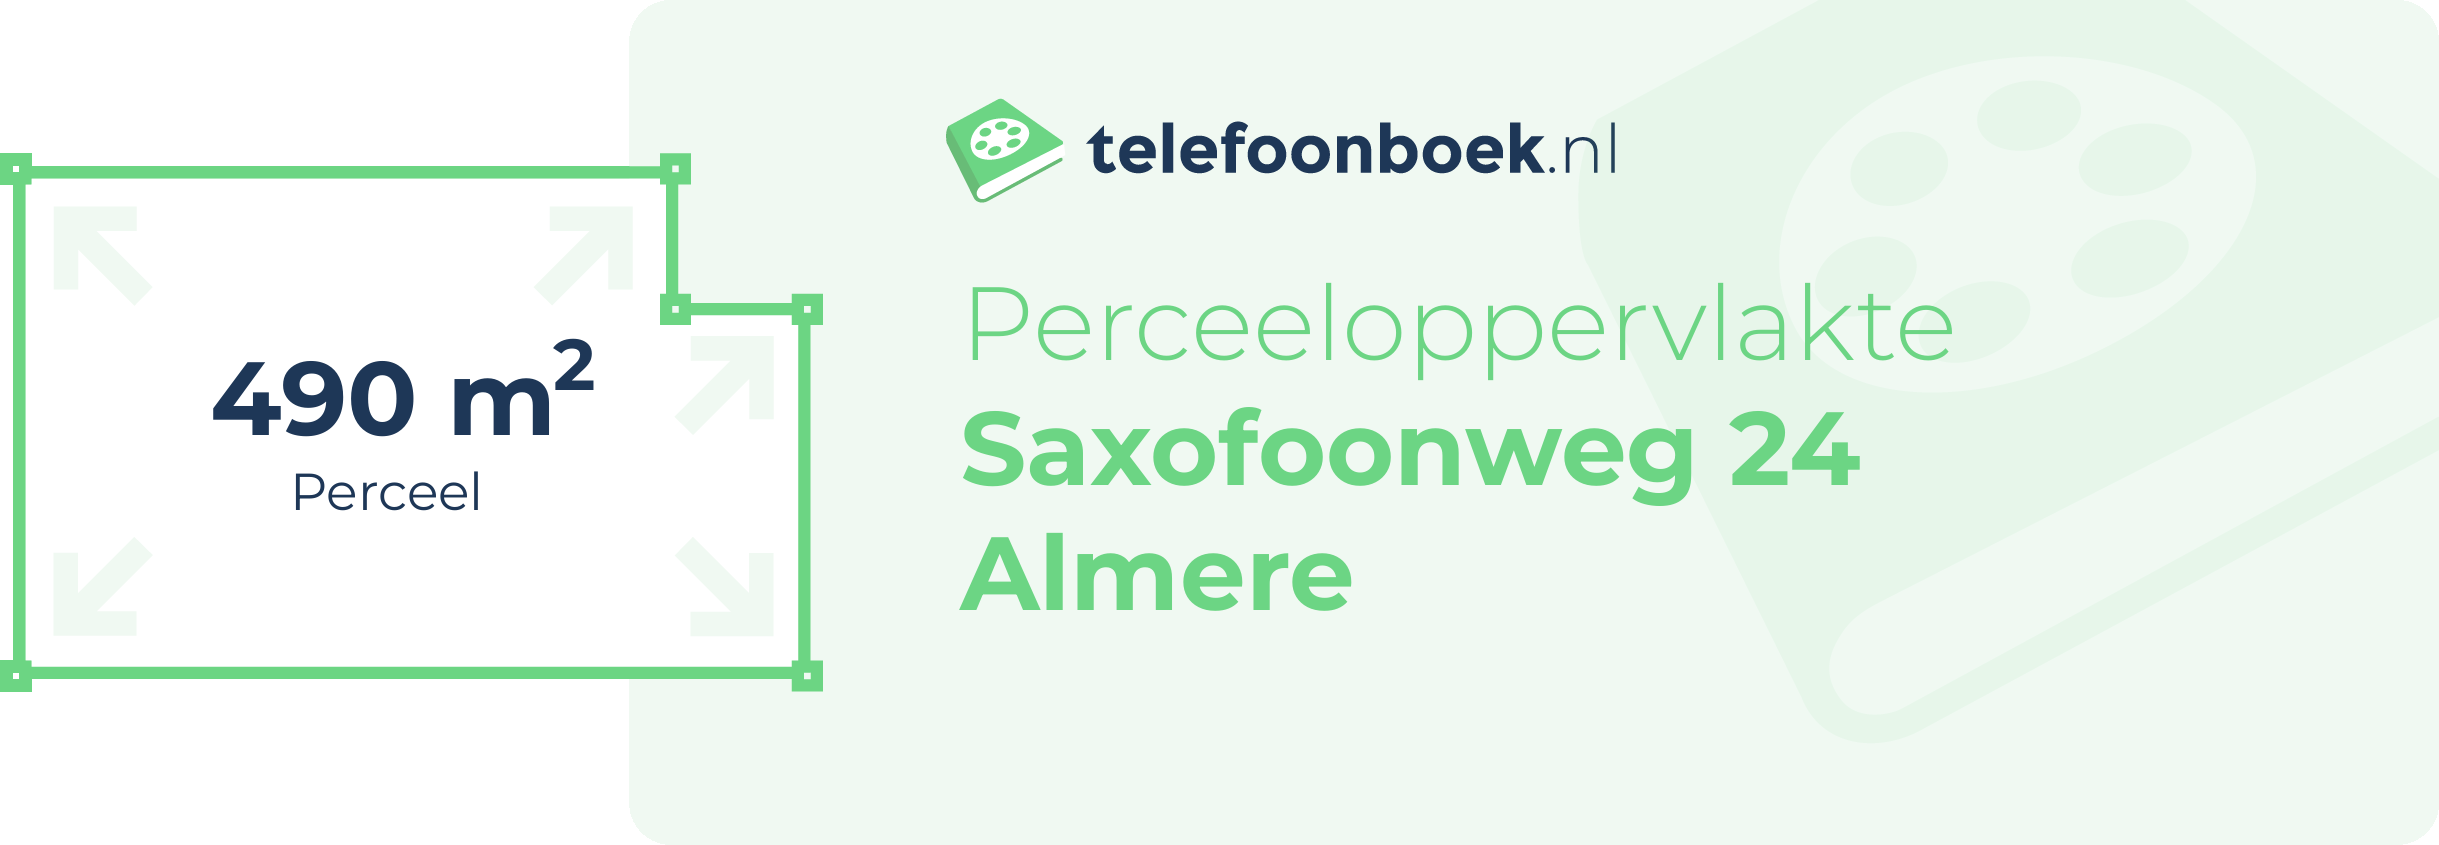 Perceeloppervlakte Saxofoonweg 24 Almere